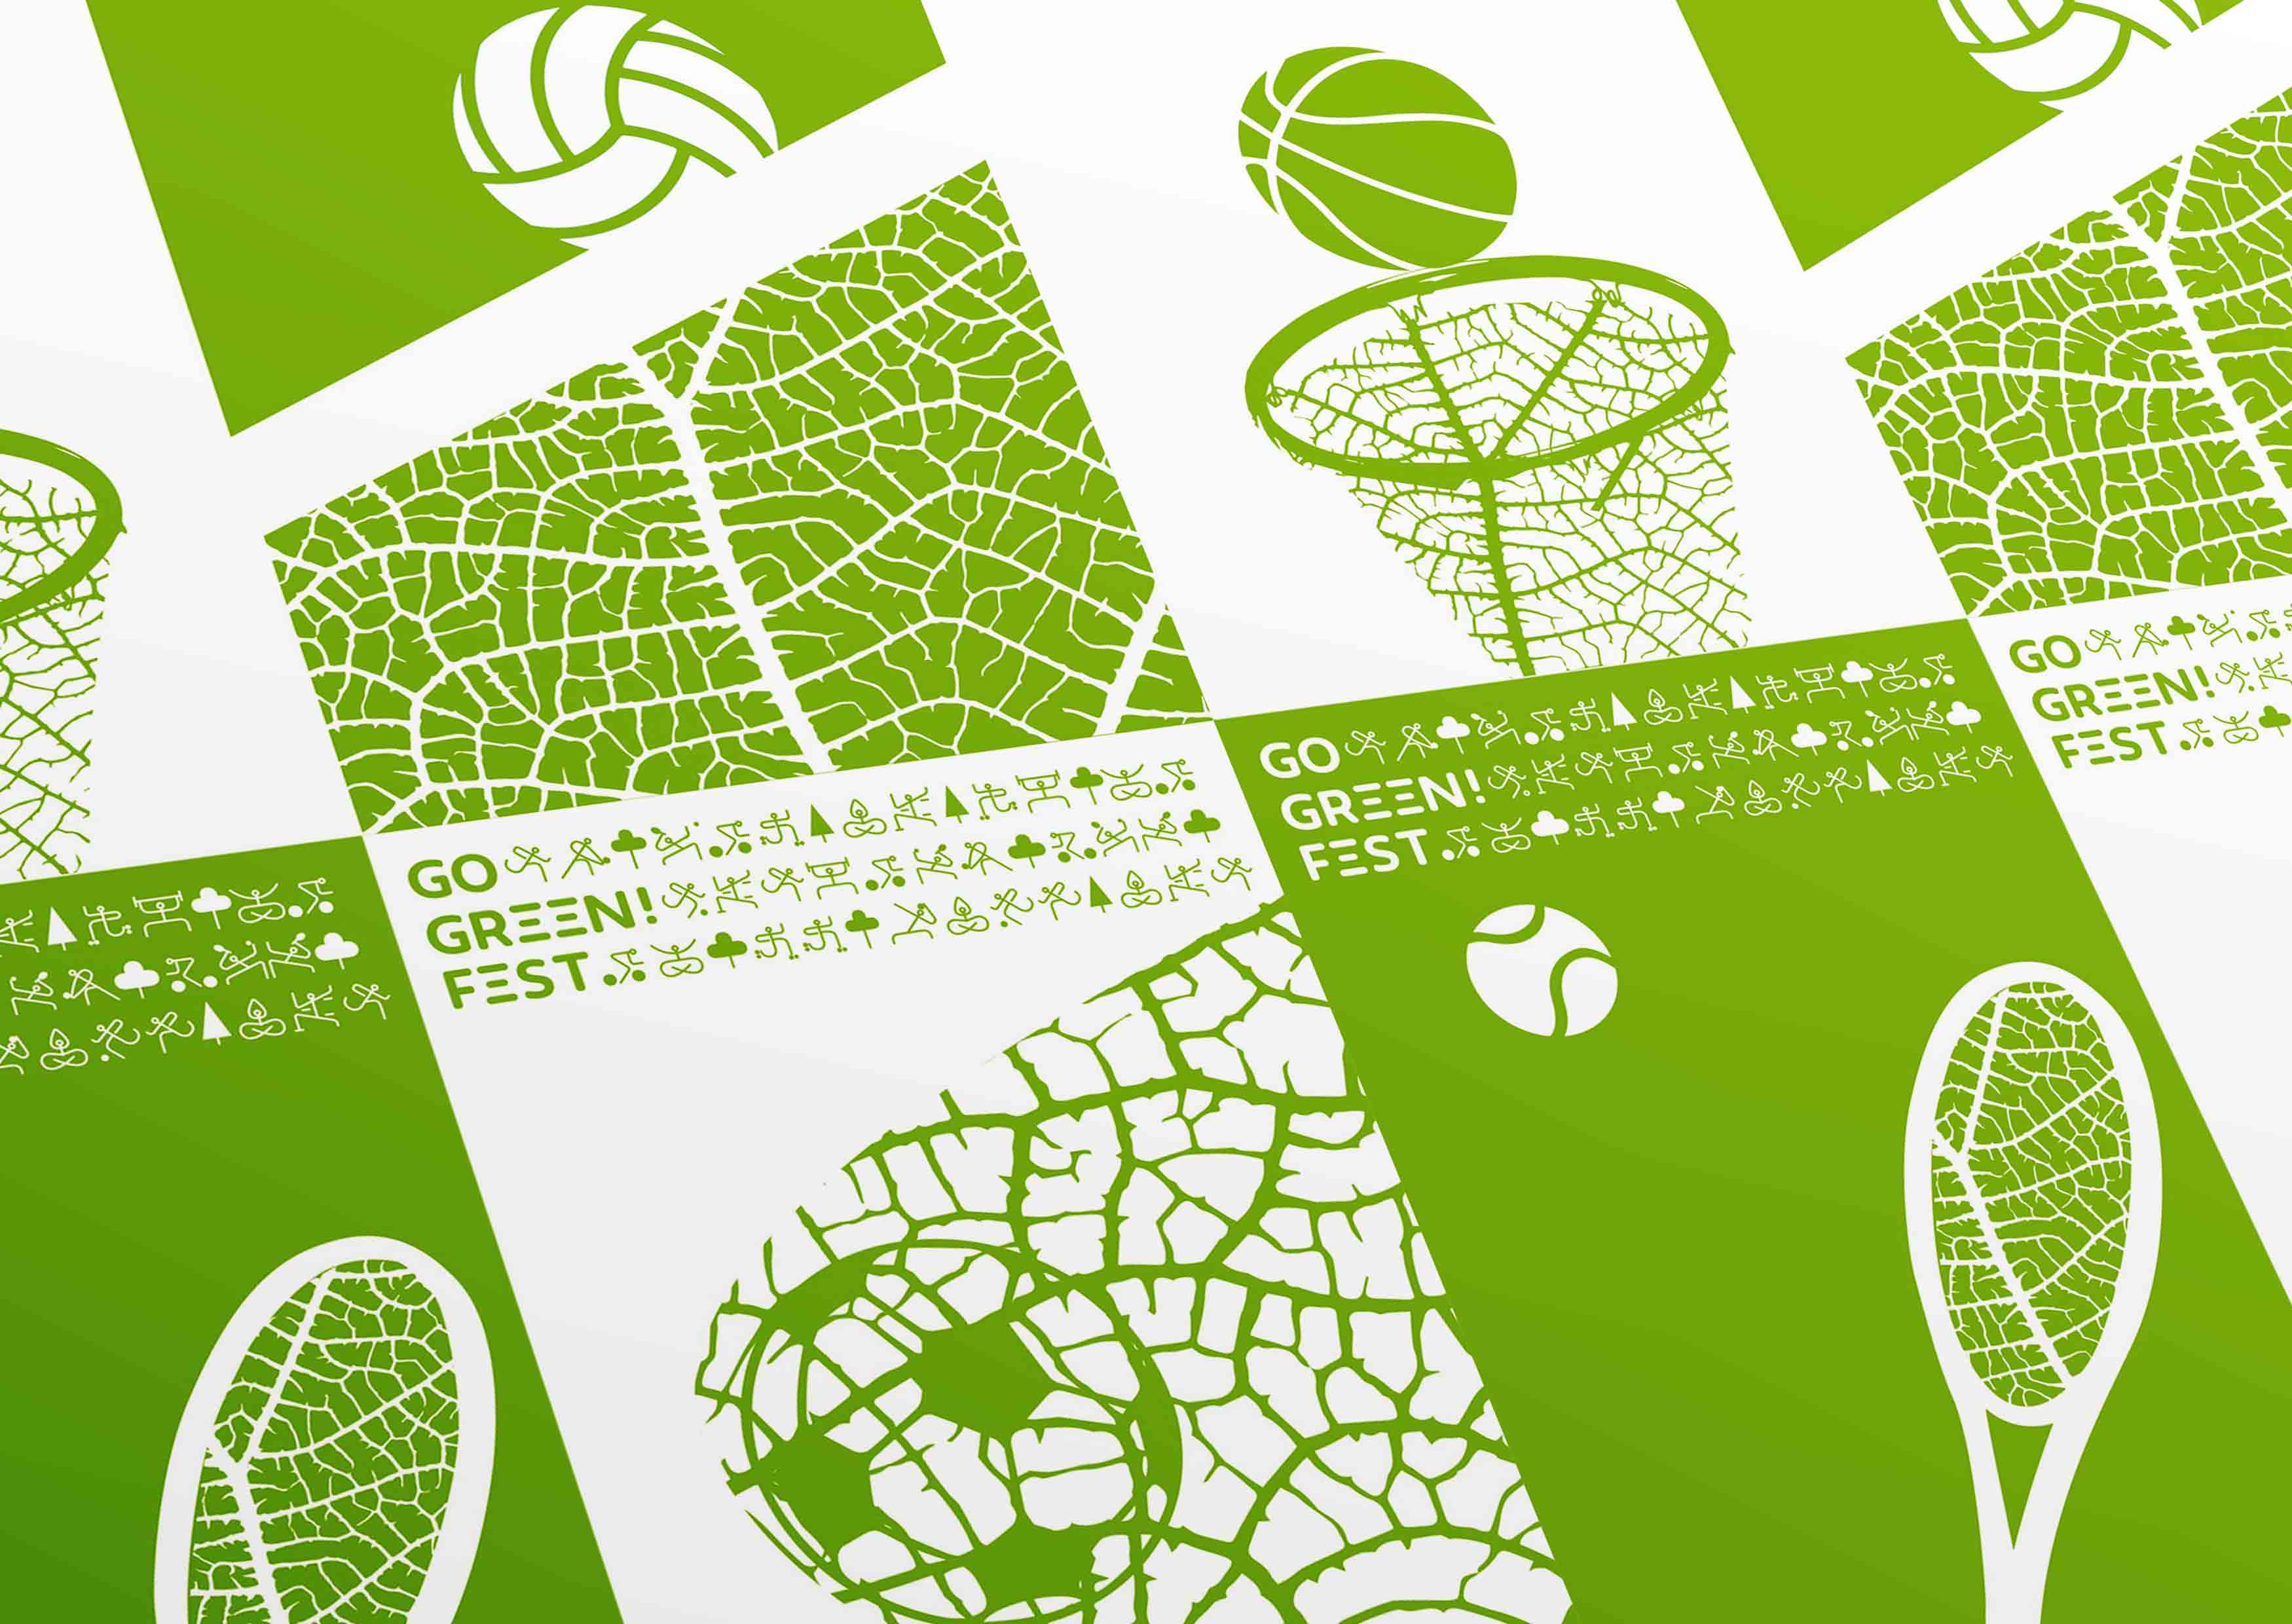 Concept for Sport Festival “Go Green Fest”